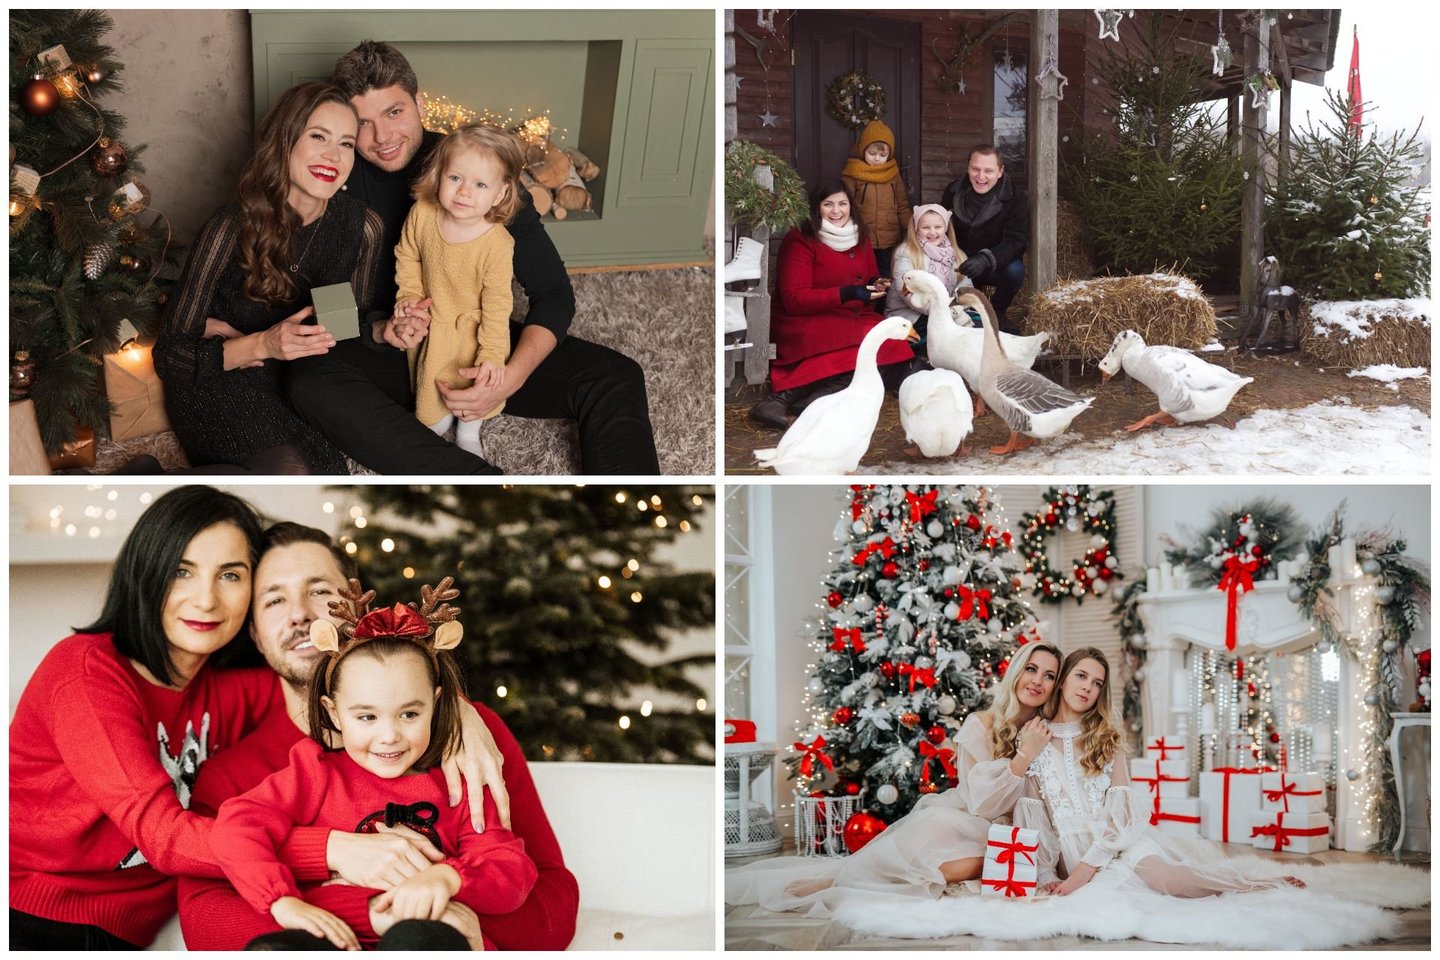  Baigiantis metams žinomų šeimų albumus papildo kalėdinių fotosesijų nuotraukos.<br> Lrytas.lt koliažas.